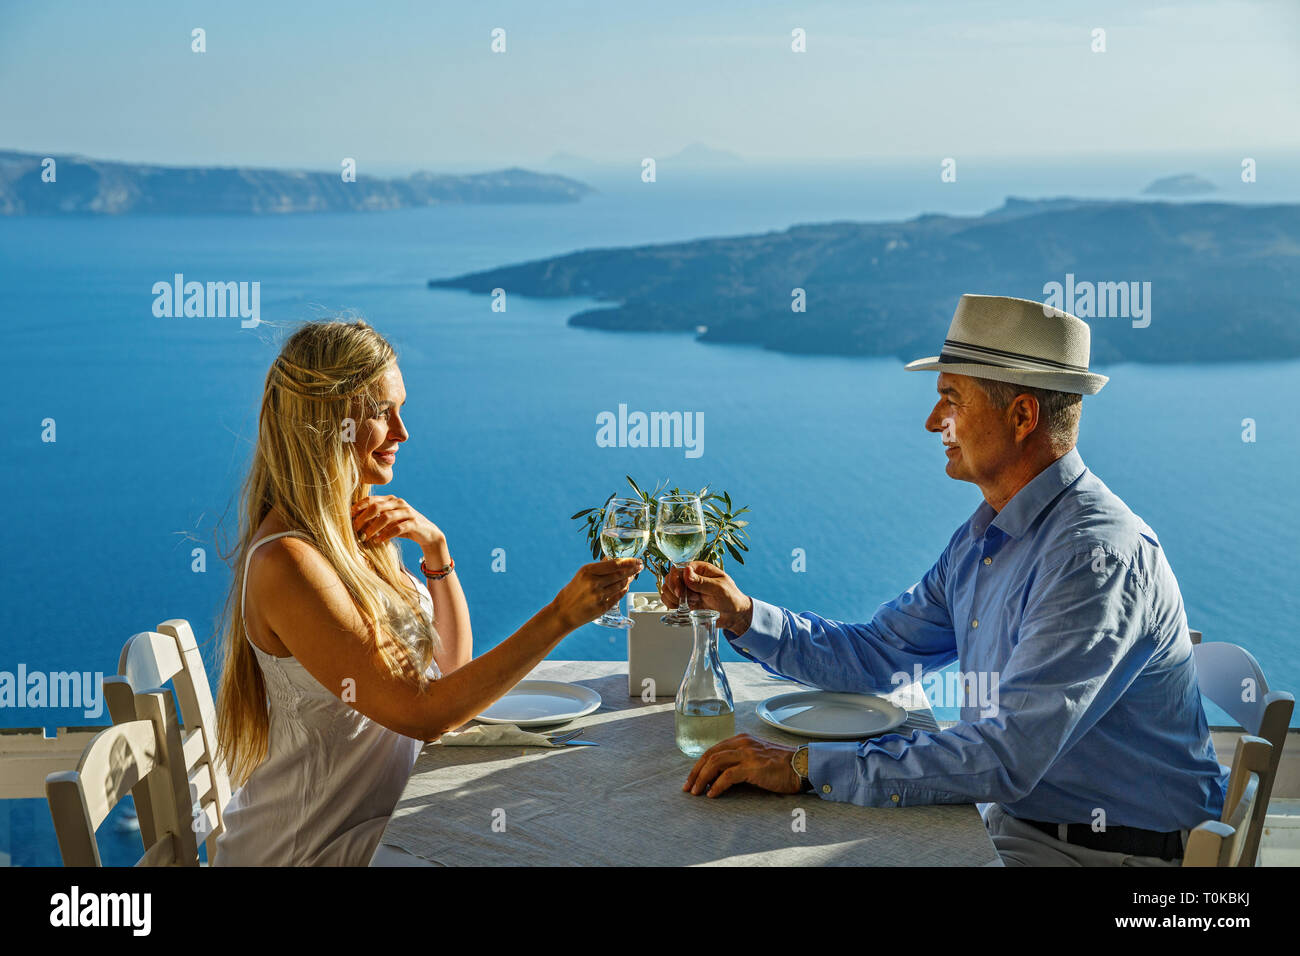 Nach paar Essen und trinken Wein in einem Restaurant auf dem Hintergrund des Meeres Stockfoto